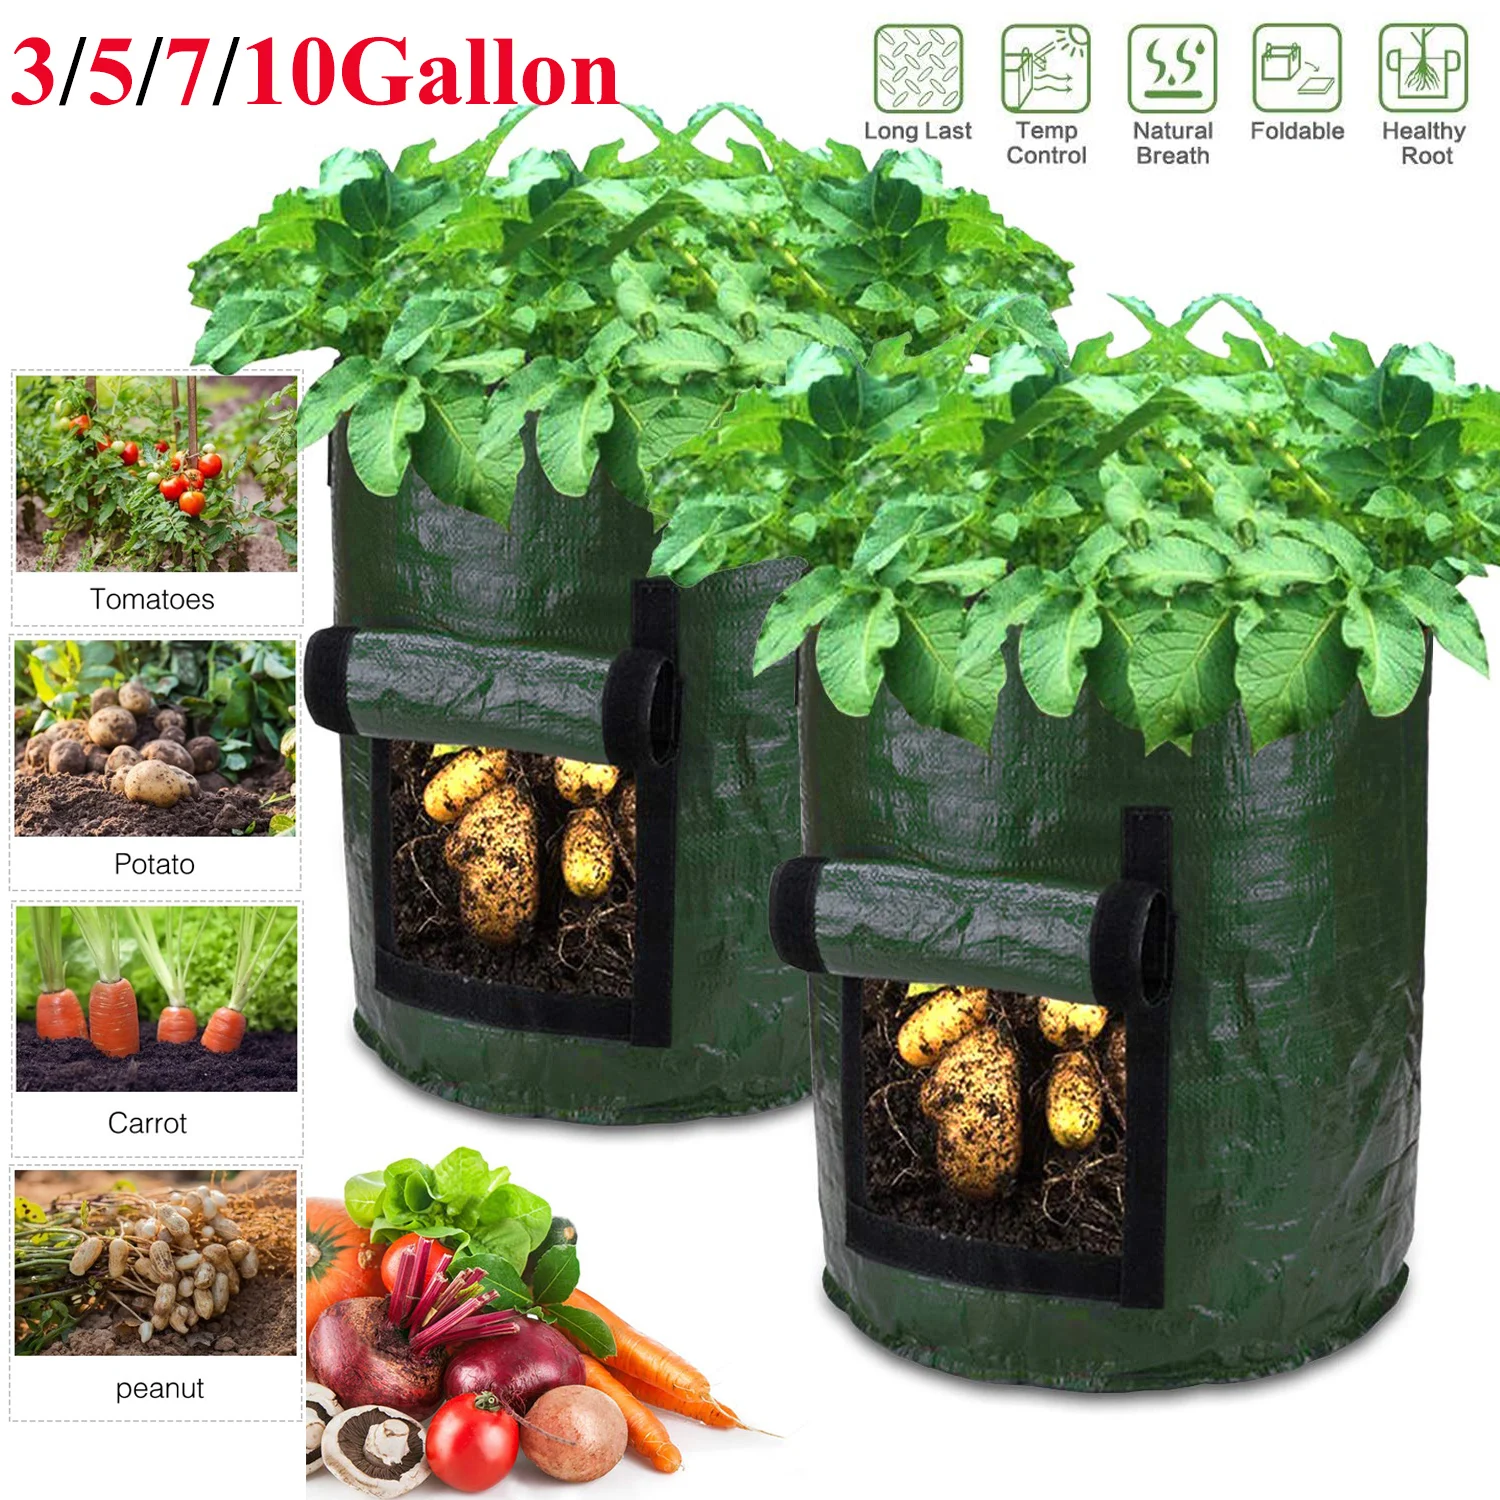 3/5/7/10 Gallon Potato Planting Bag Pot Planter Growing Garden Veget Container 